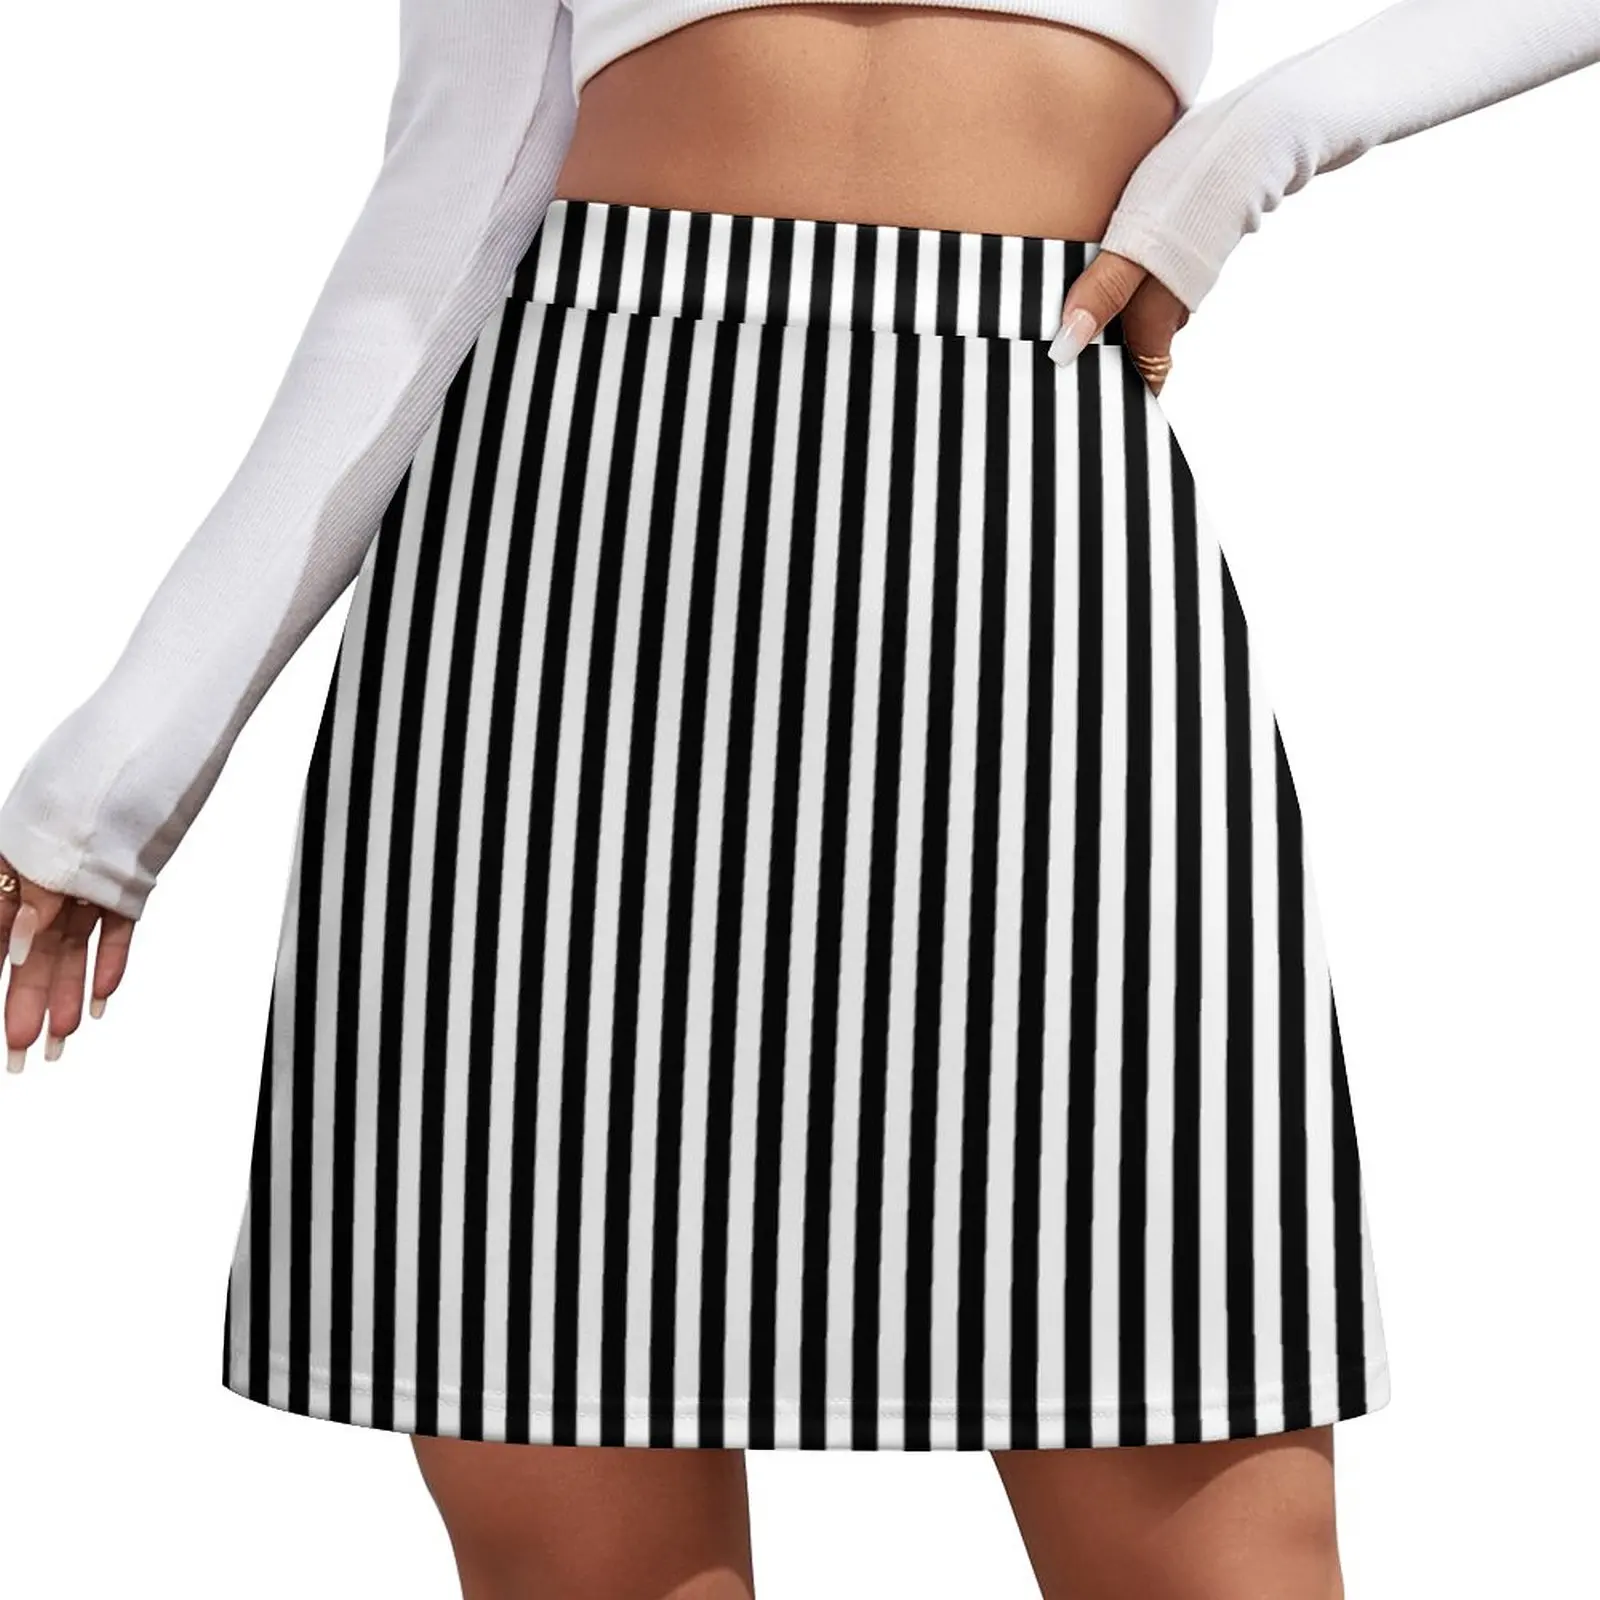 

Black and white Vertical Stripes Mini Skirt short skirt for women korean summer clothes